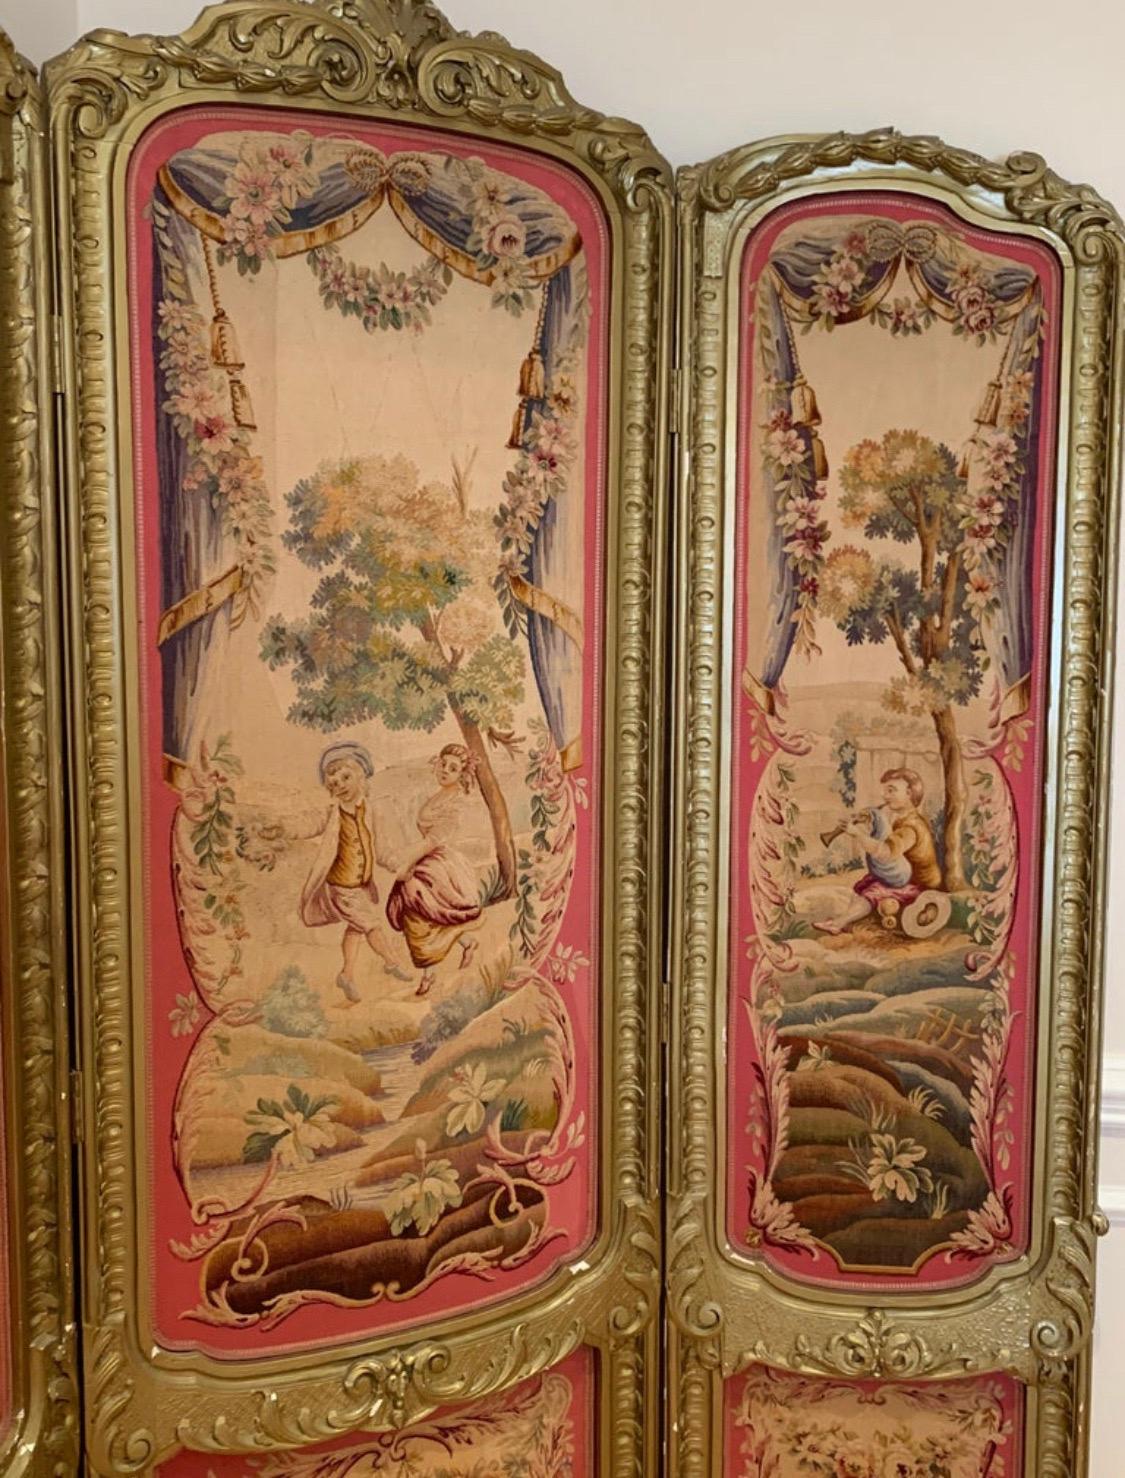 Wunderschöner vergoldeter Paravent und Kaminschirm aus dem 19. Jahrhundert im Stil von Louis XV Regency mit Wandteppichen. Die Wandteppiche im Rokokostil sind in einem tadellosen Zustand mit nur sehr geringen Vergoldungsverlusten an den Rahmen. Der